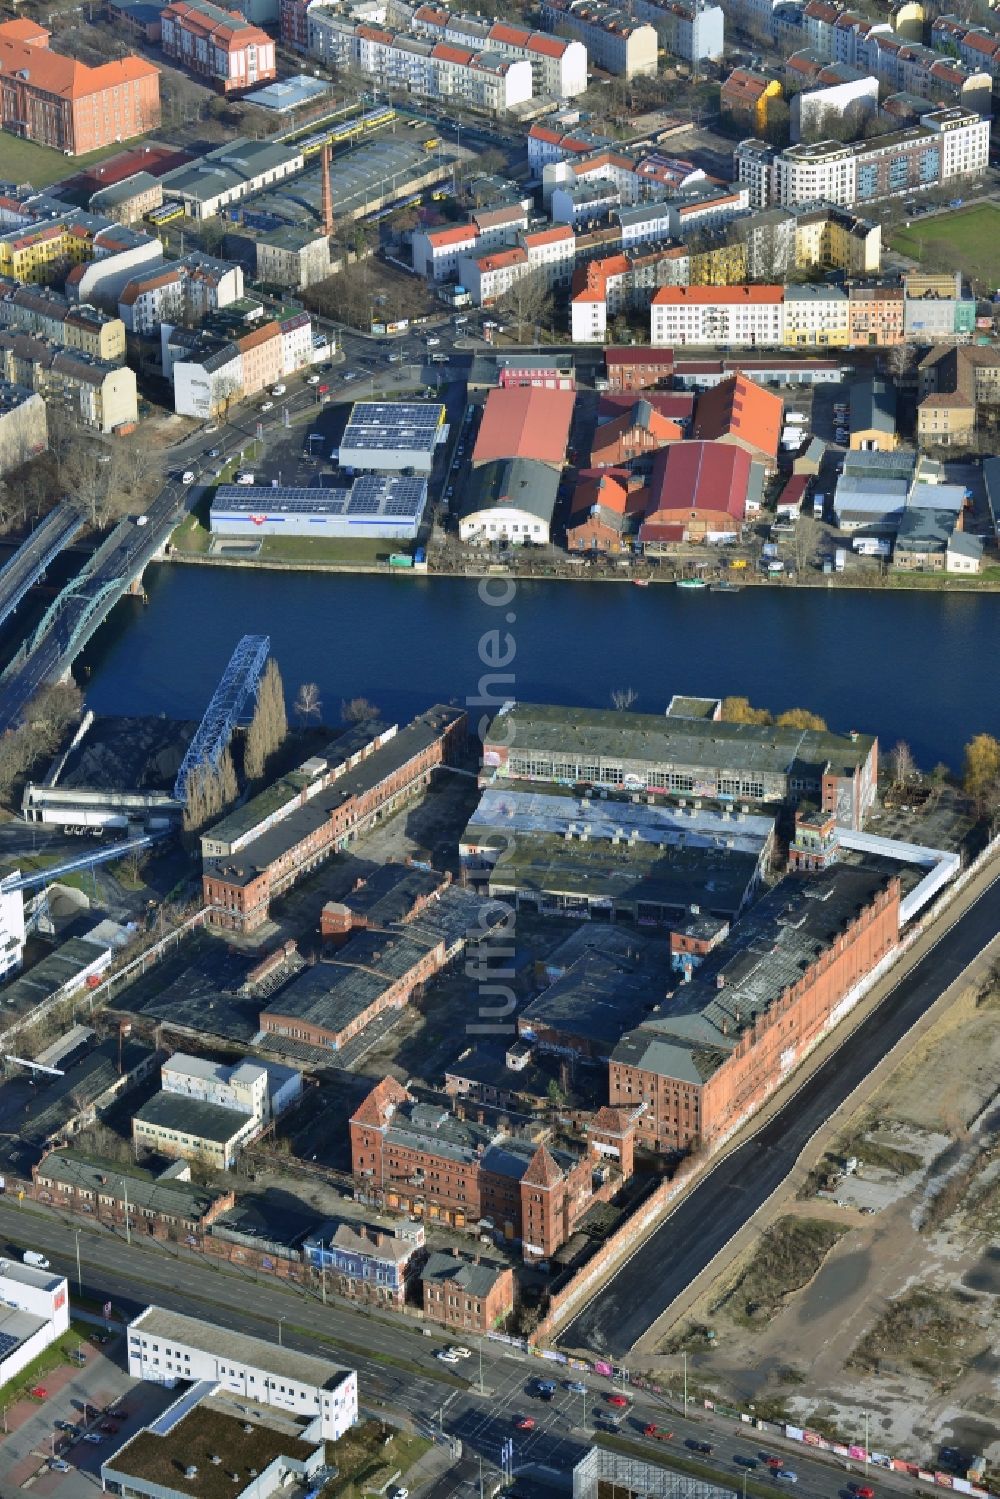 Luftbild Berlin - Industrieruine der ehemaligen Bärenquell Brauerei in Niederschöneweide in Berlin